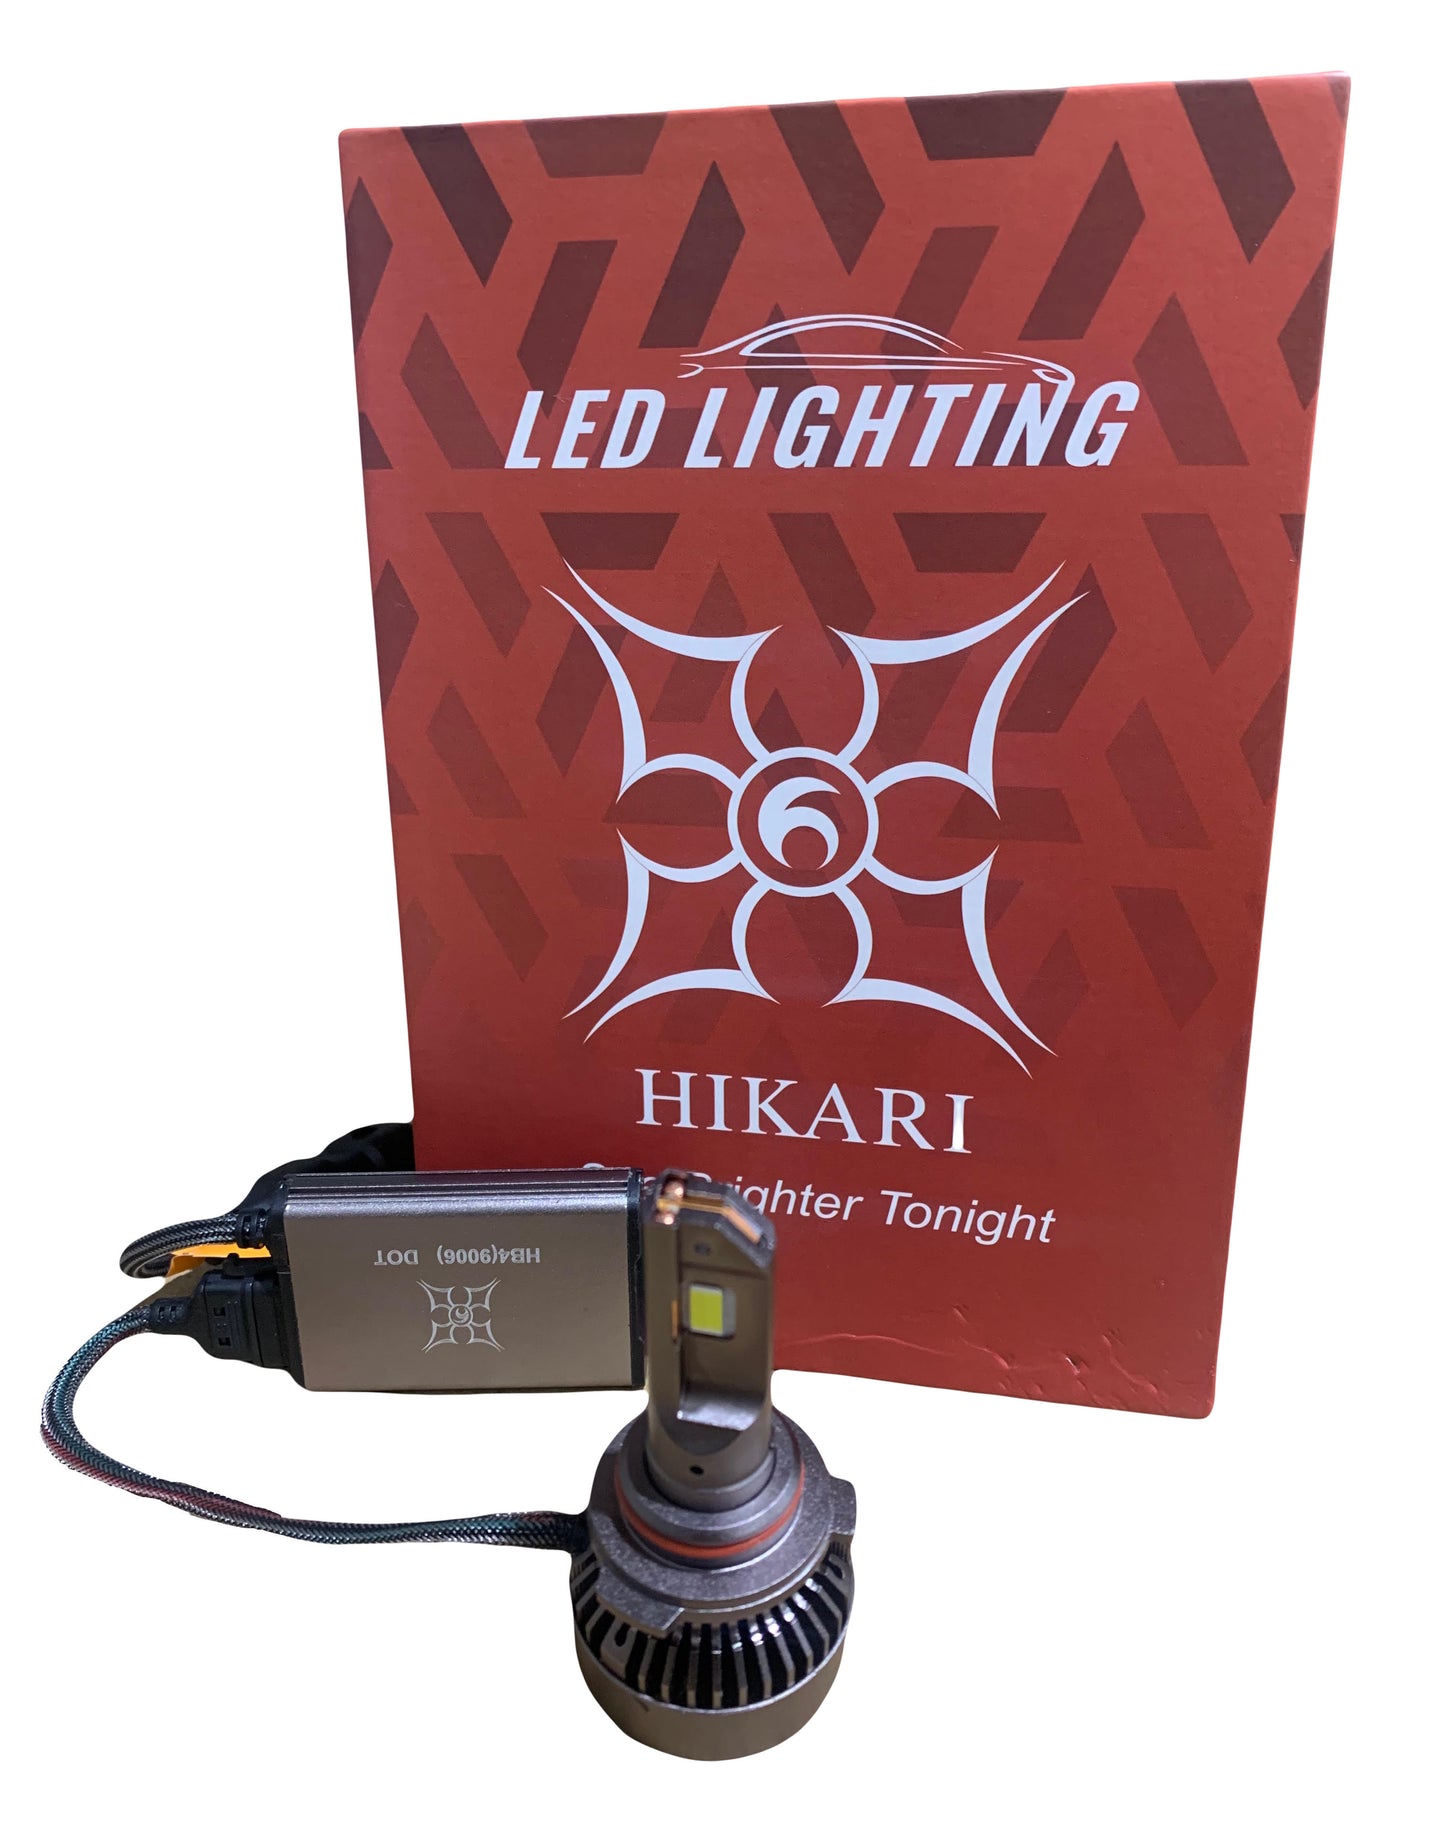 HIKARI HB4(9006) LED Lighting Bulb, Pack of 2